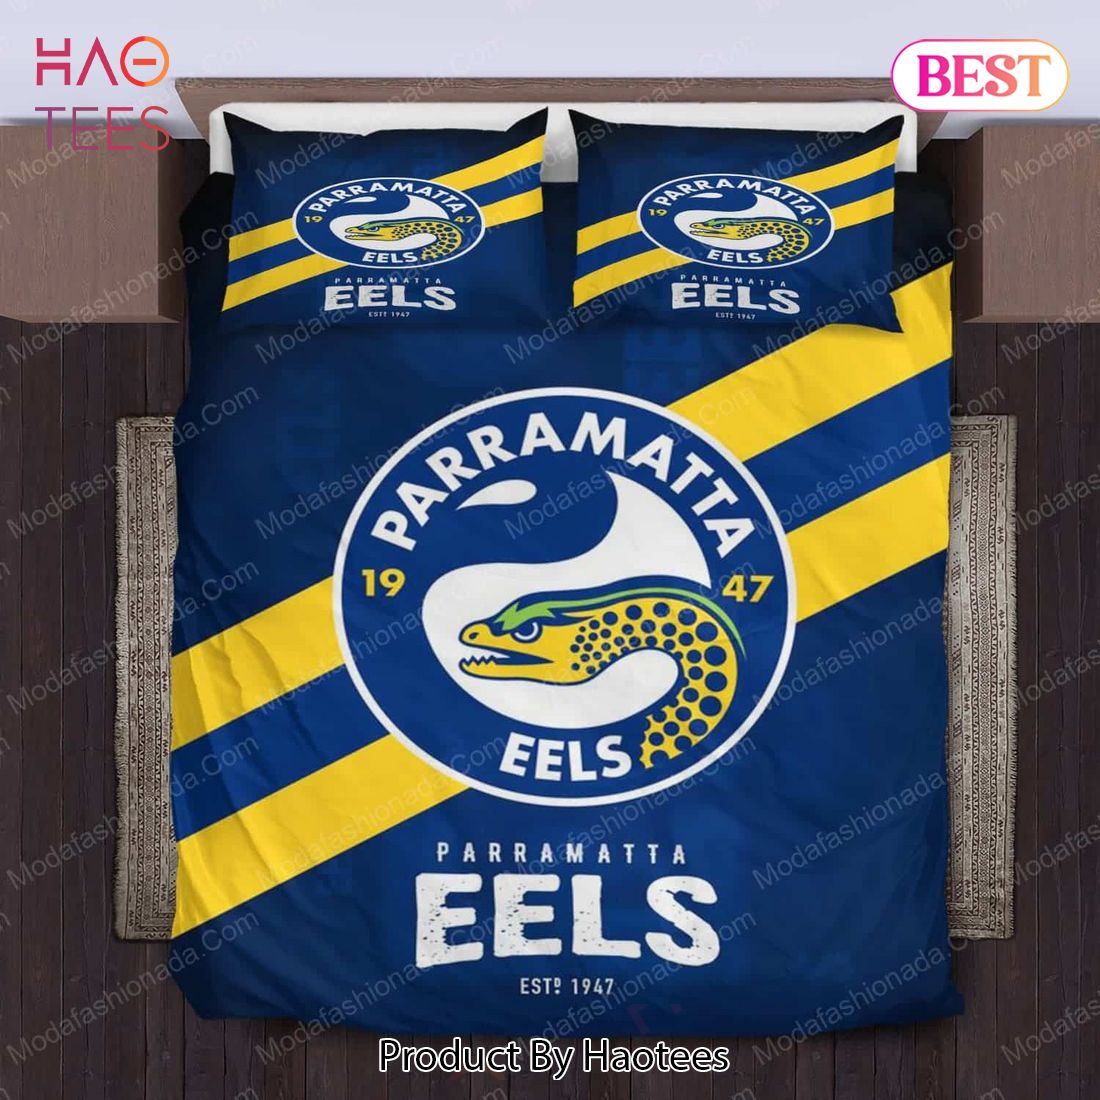 Buy Parramatta Eels Logo Bedding Sets 01 Bed Sets, Bedroom Sets, Comforter Sets, Duvet Cover, Bedspread